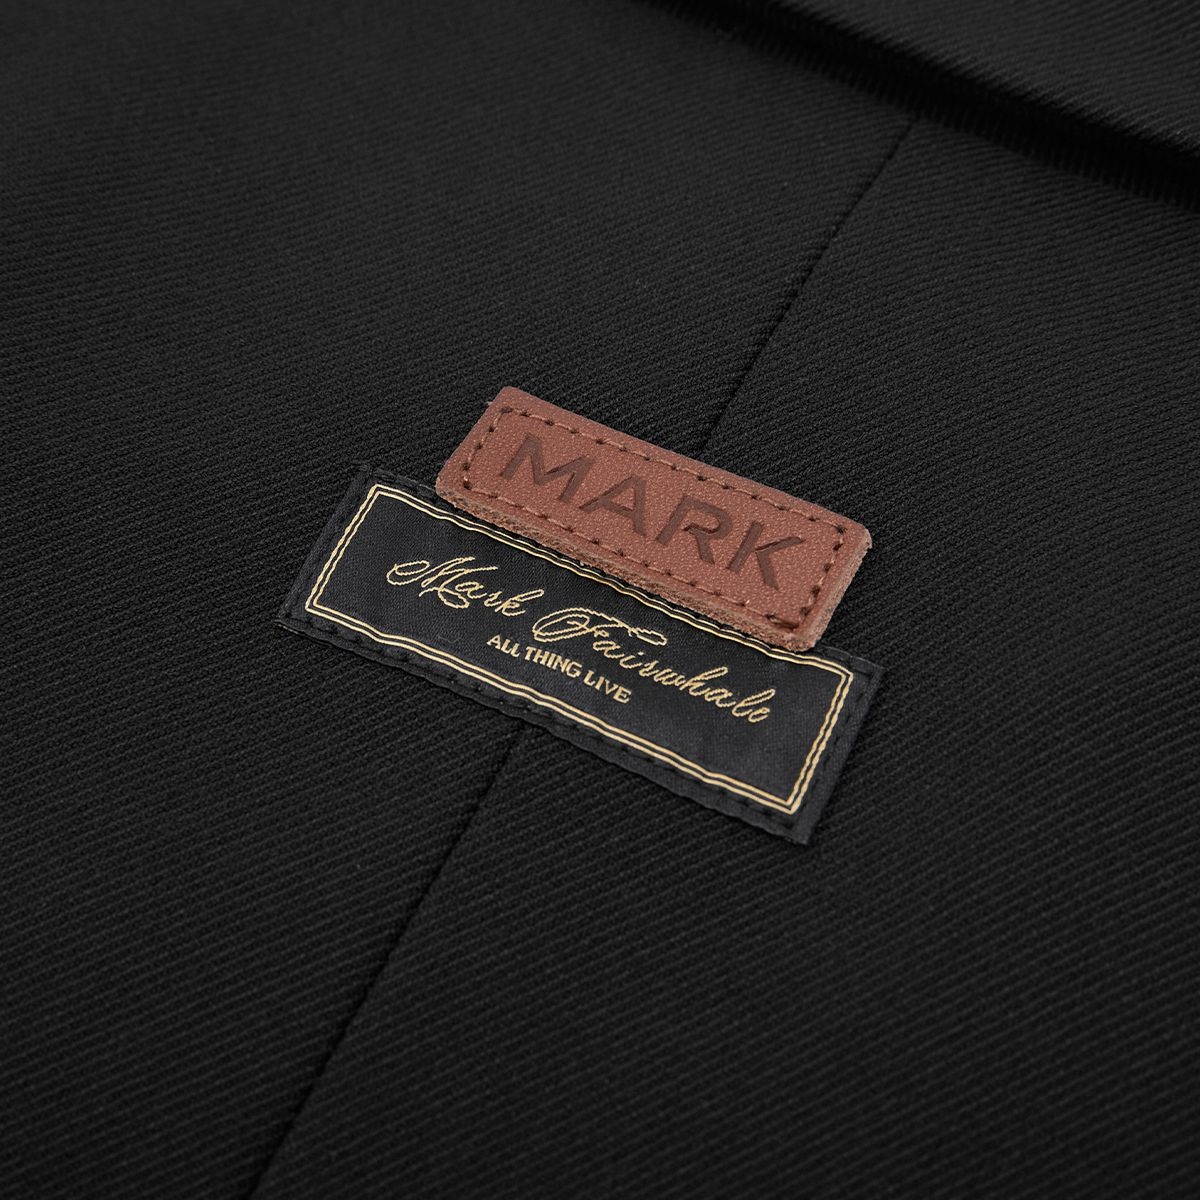 马克华菲纯色简约品牌贴标休闲西服男春秋季时尚商务高街合体外套